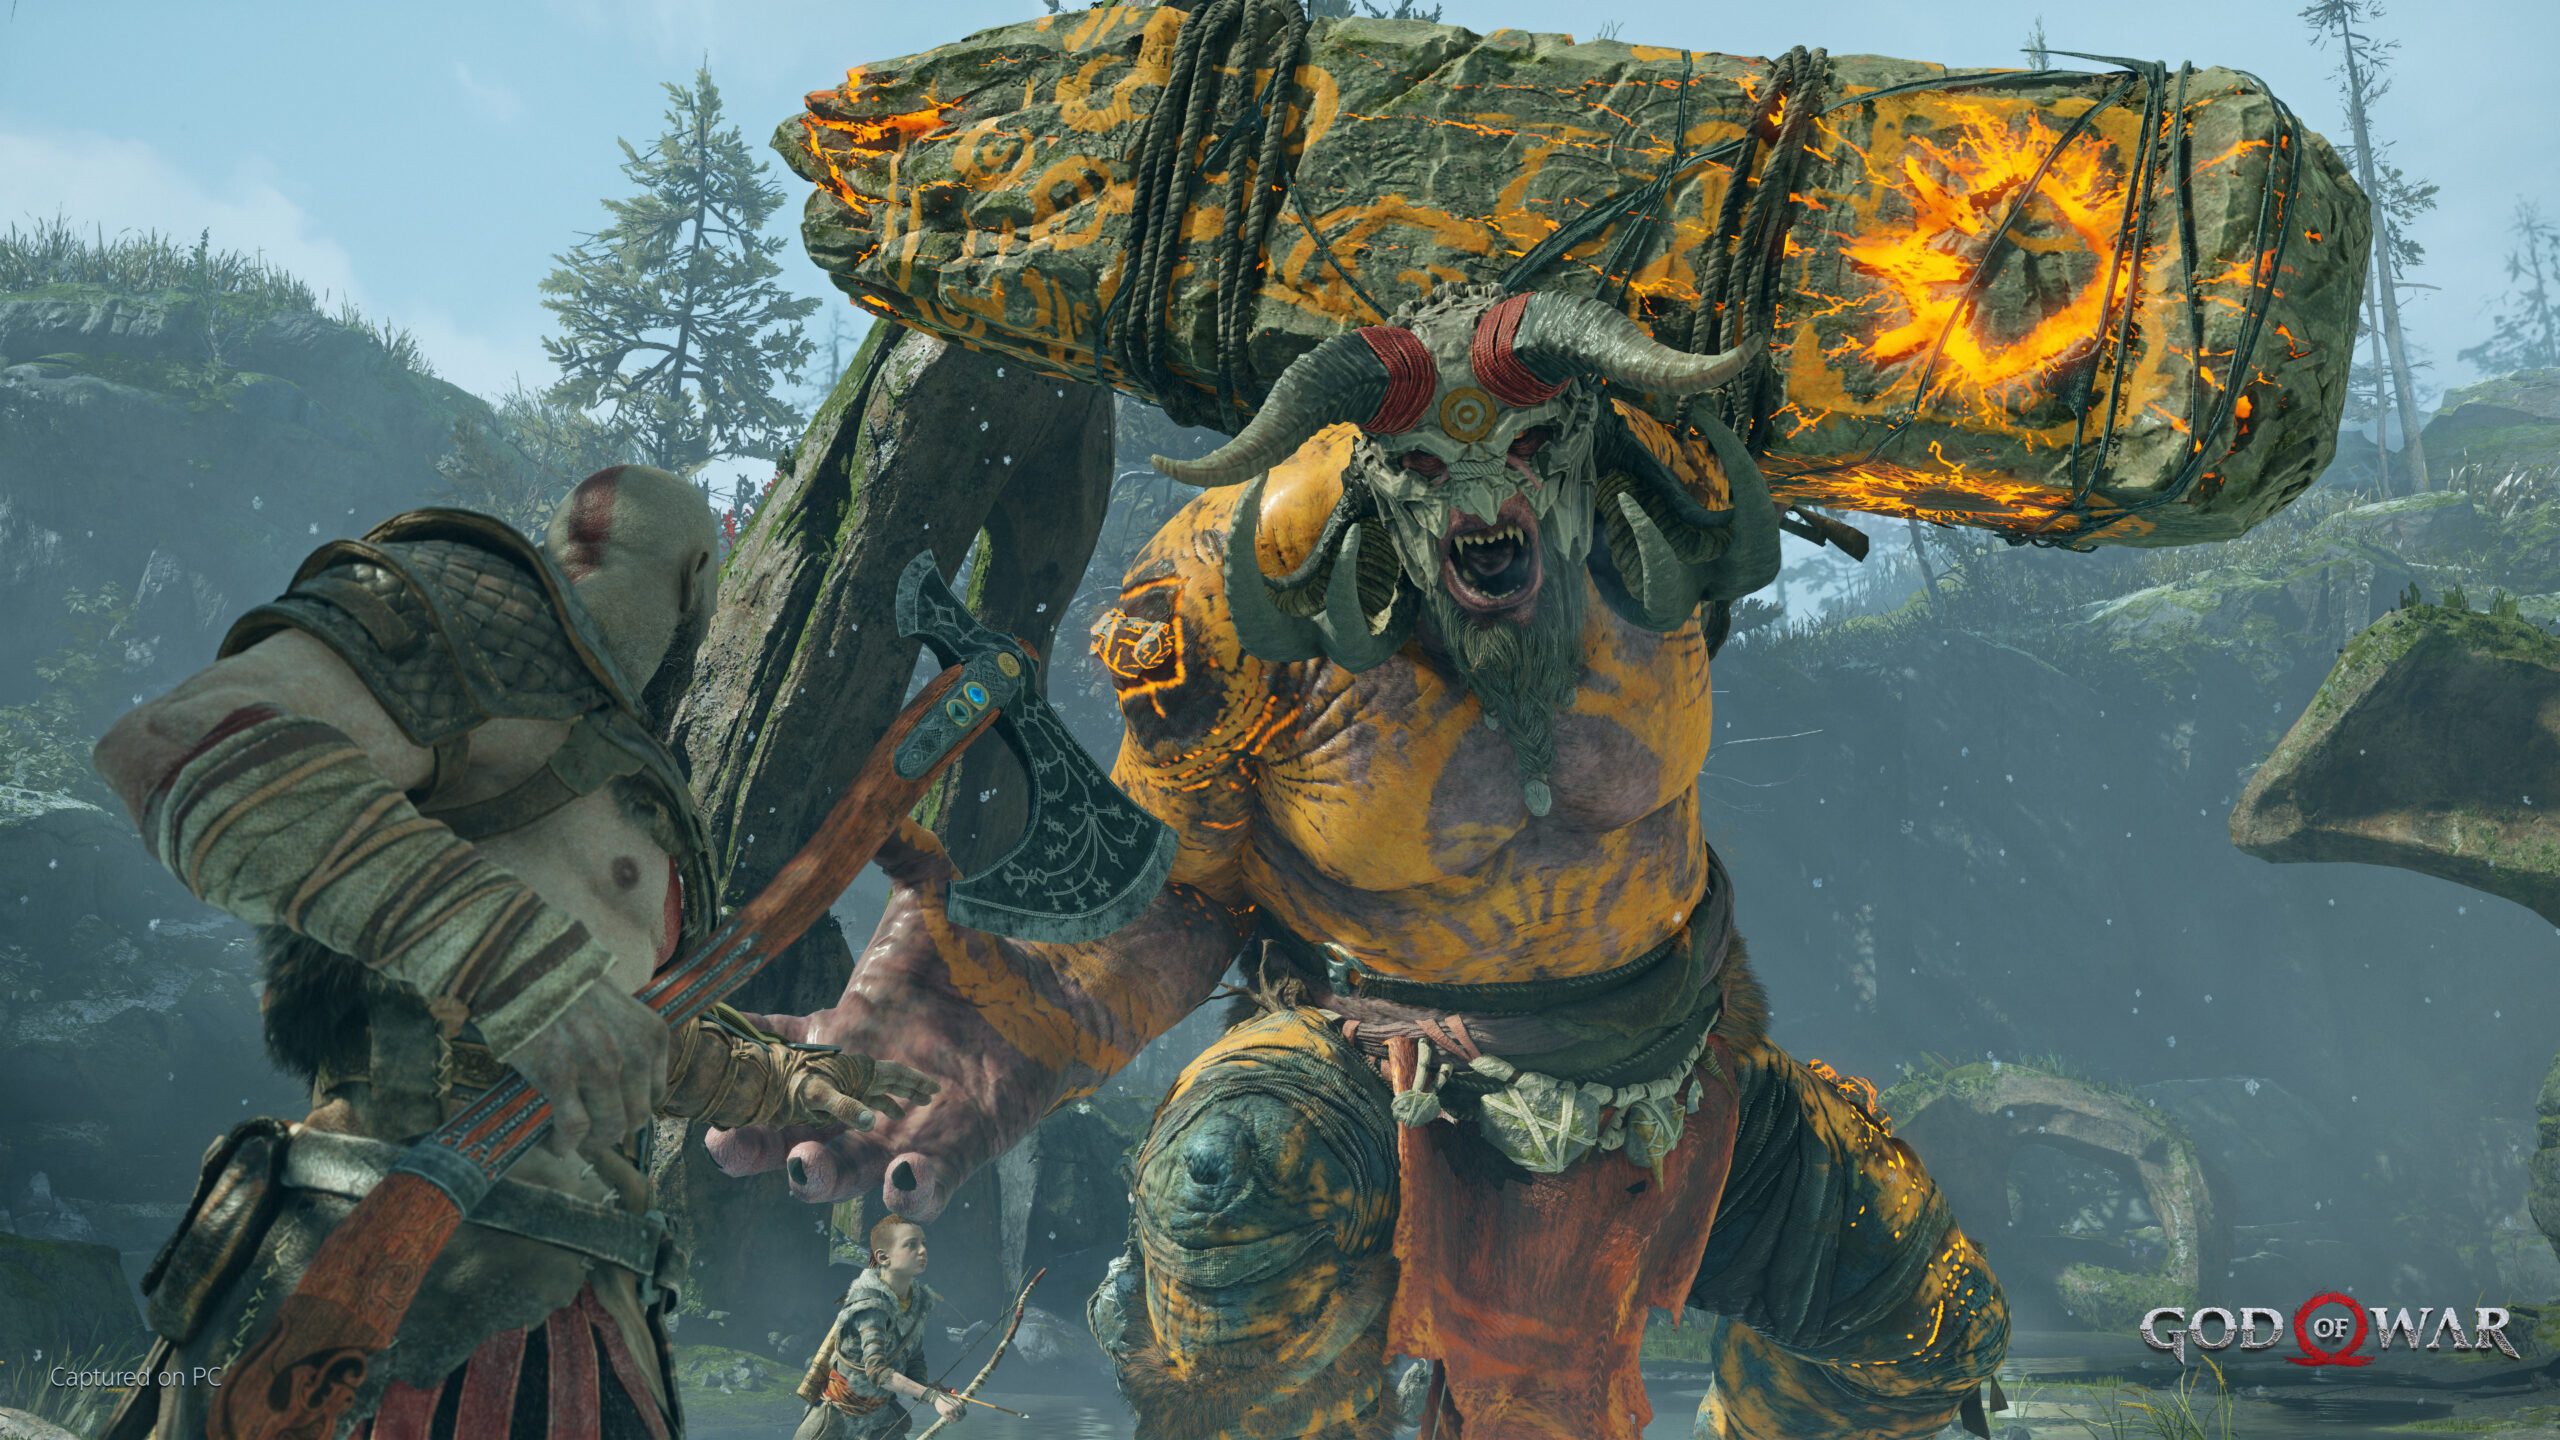 God of War para PC: dicas de gameplay para o lançamento amanhã –  PlayStation.Blog BR